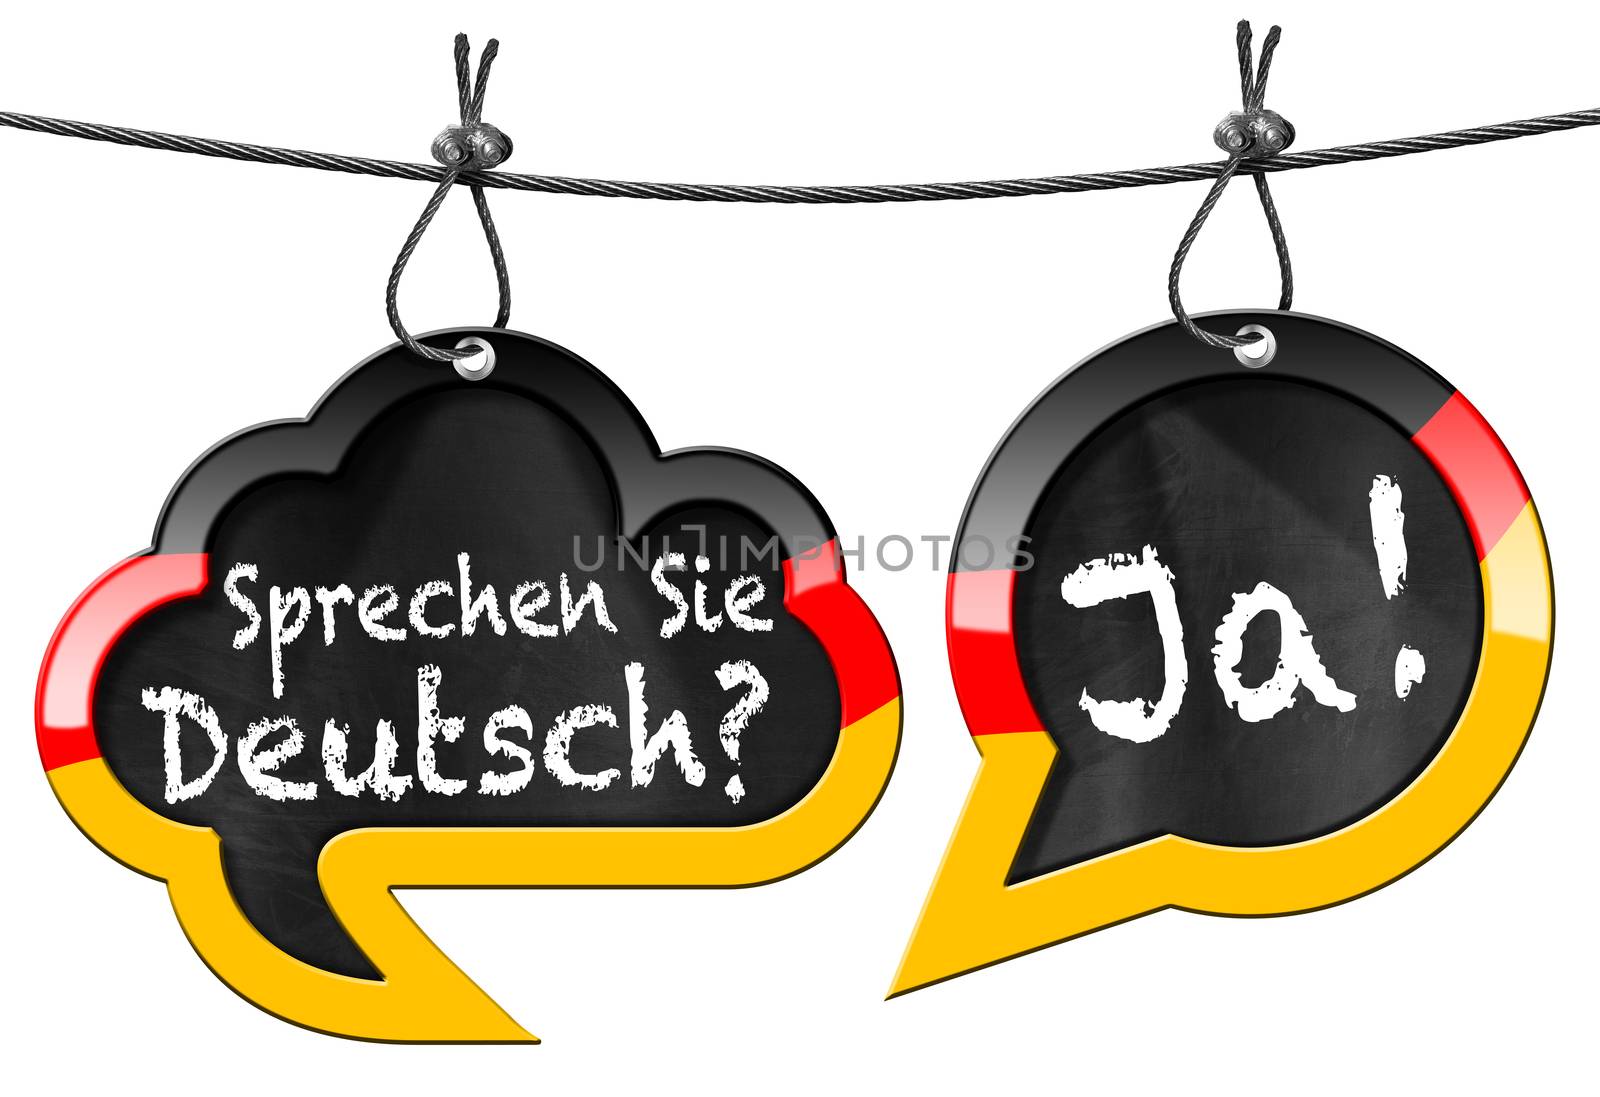 Sprechen Sie Deutsch - Speech Bubbles by catalby